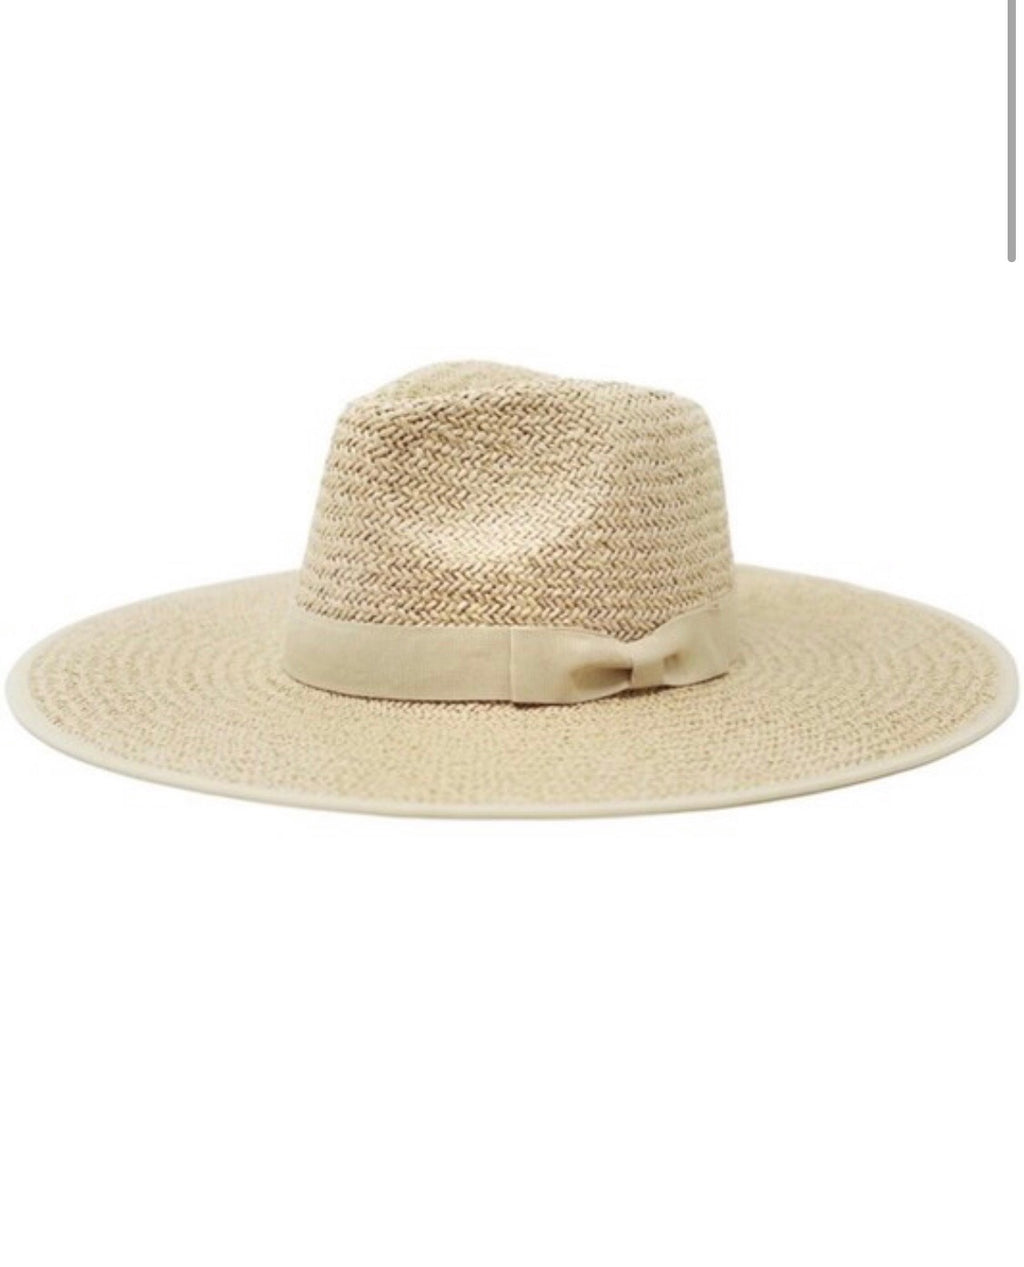 The Nattie Straw Hat